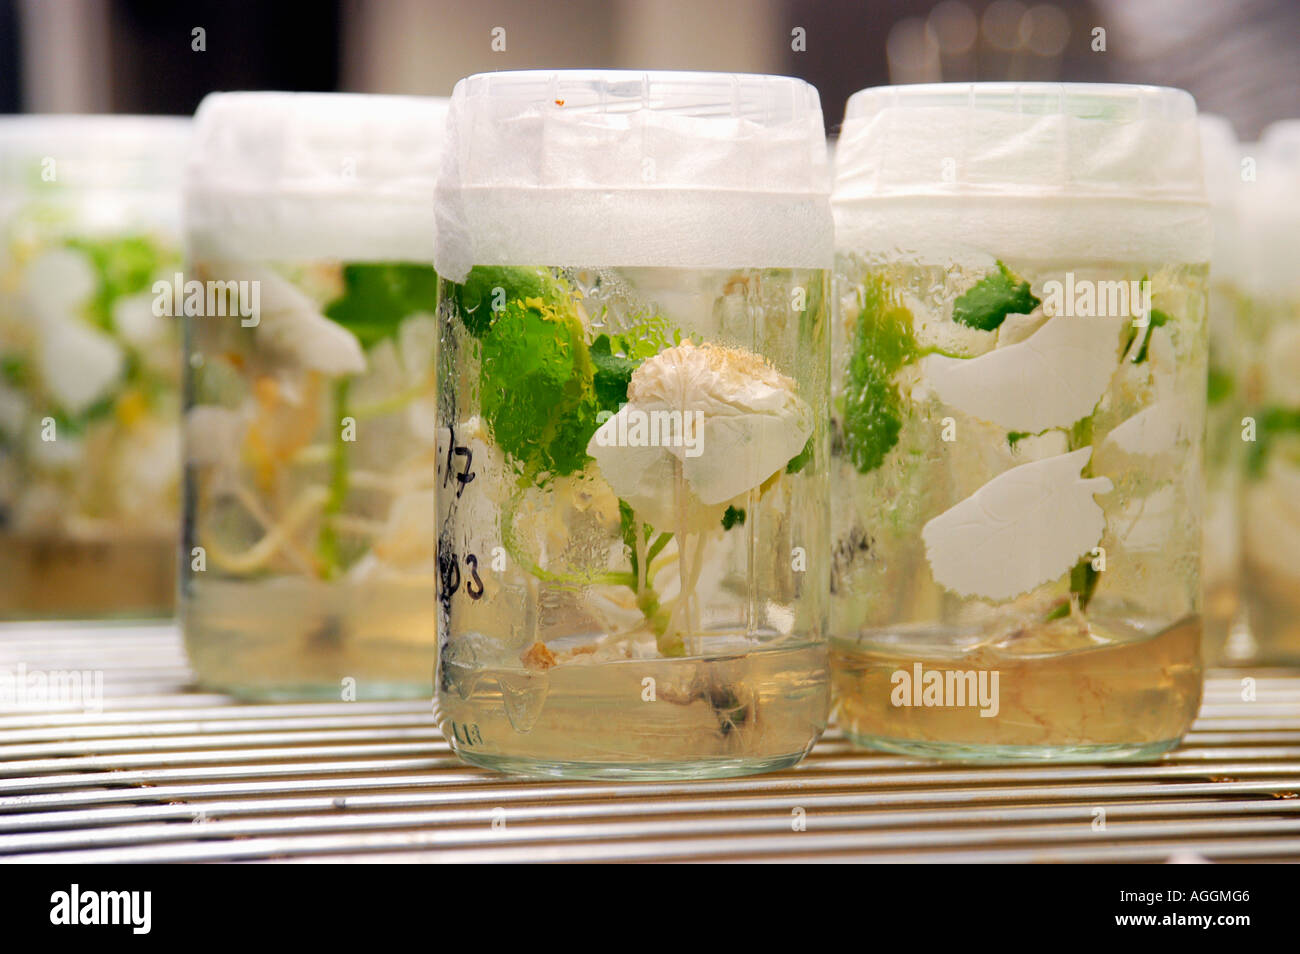 Campioni contenenti organismi geneticamente modificati / engineered germogli di piante in laboratorio, Svezia Foto Stock